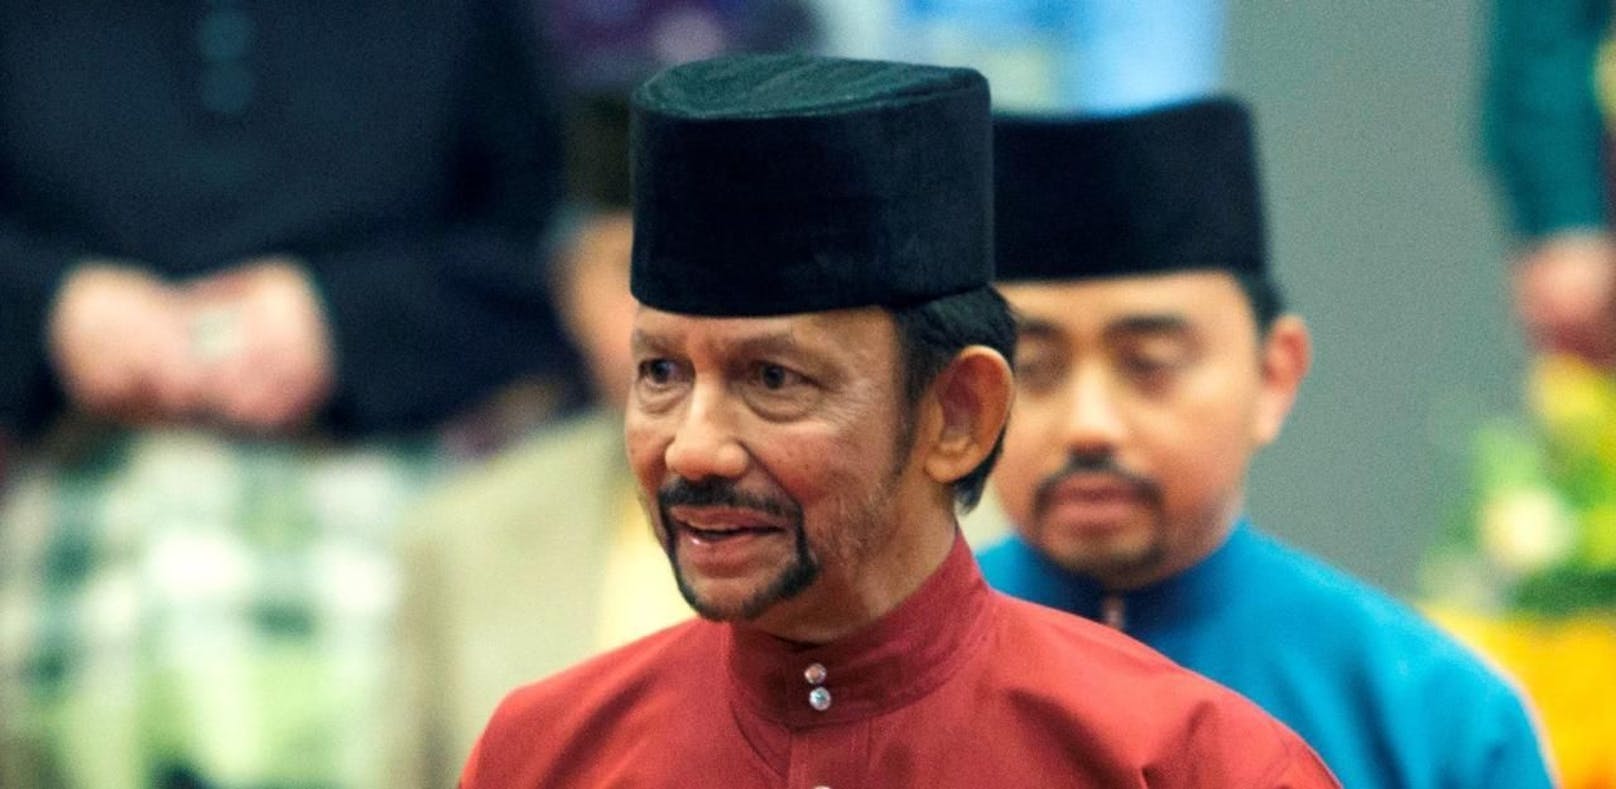 Schwule werden in Brunei doch nicht getötet